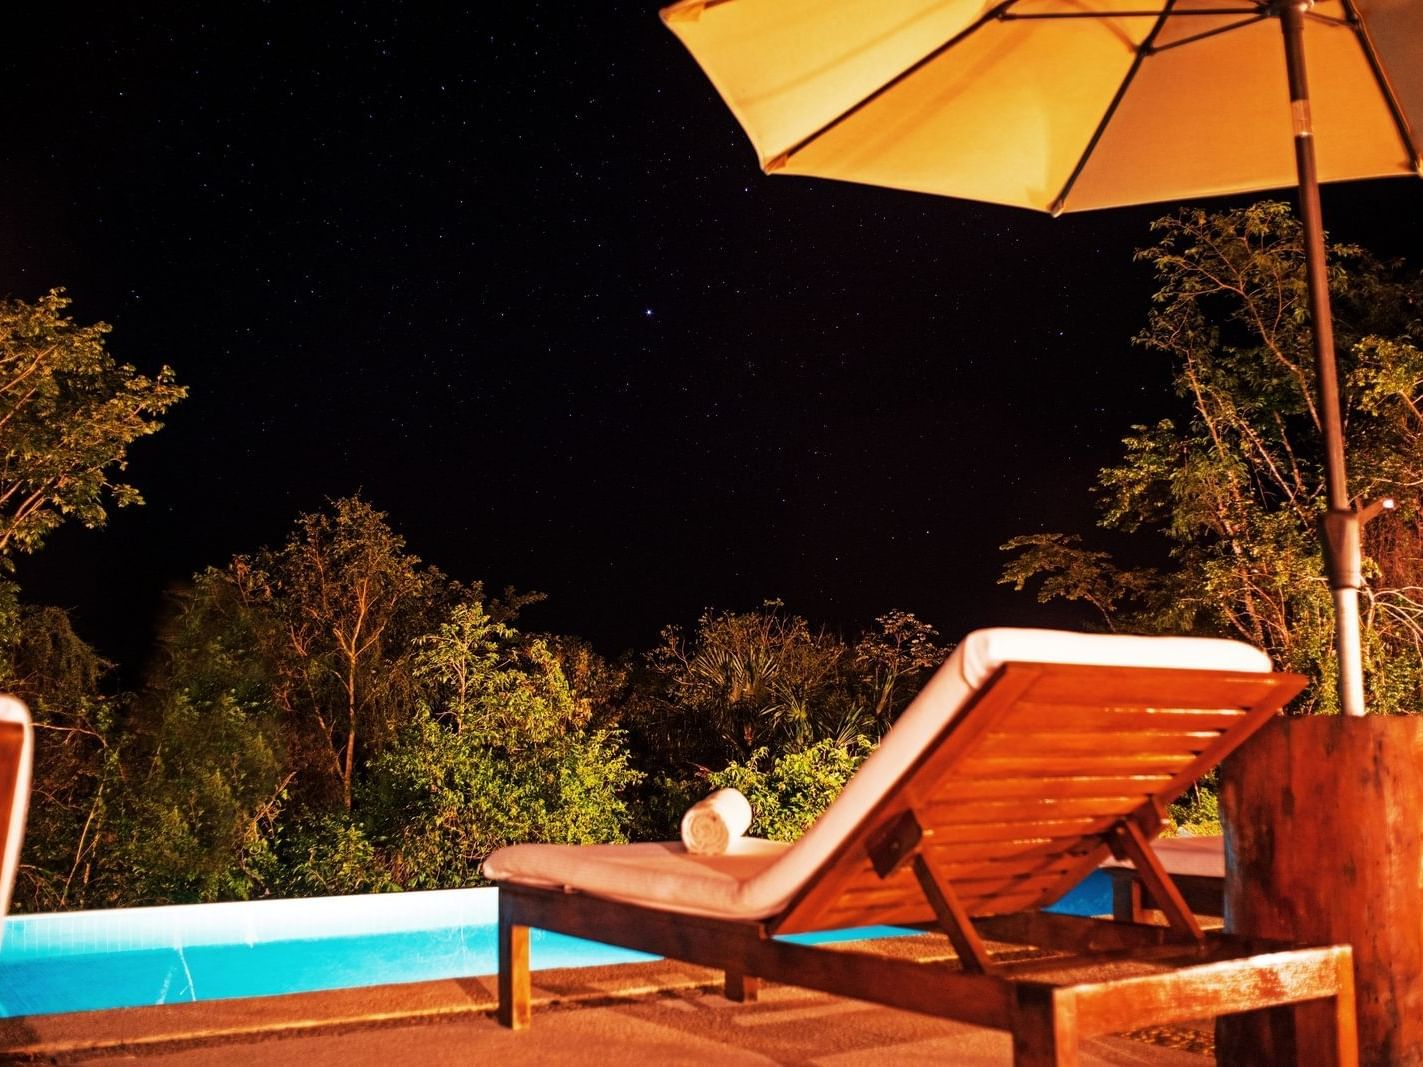 Sun lounger at pool at night at La Coleccion Resorts